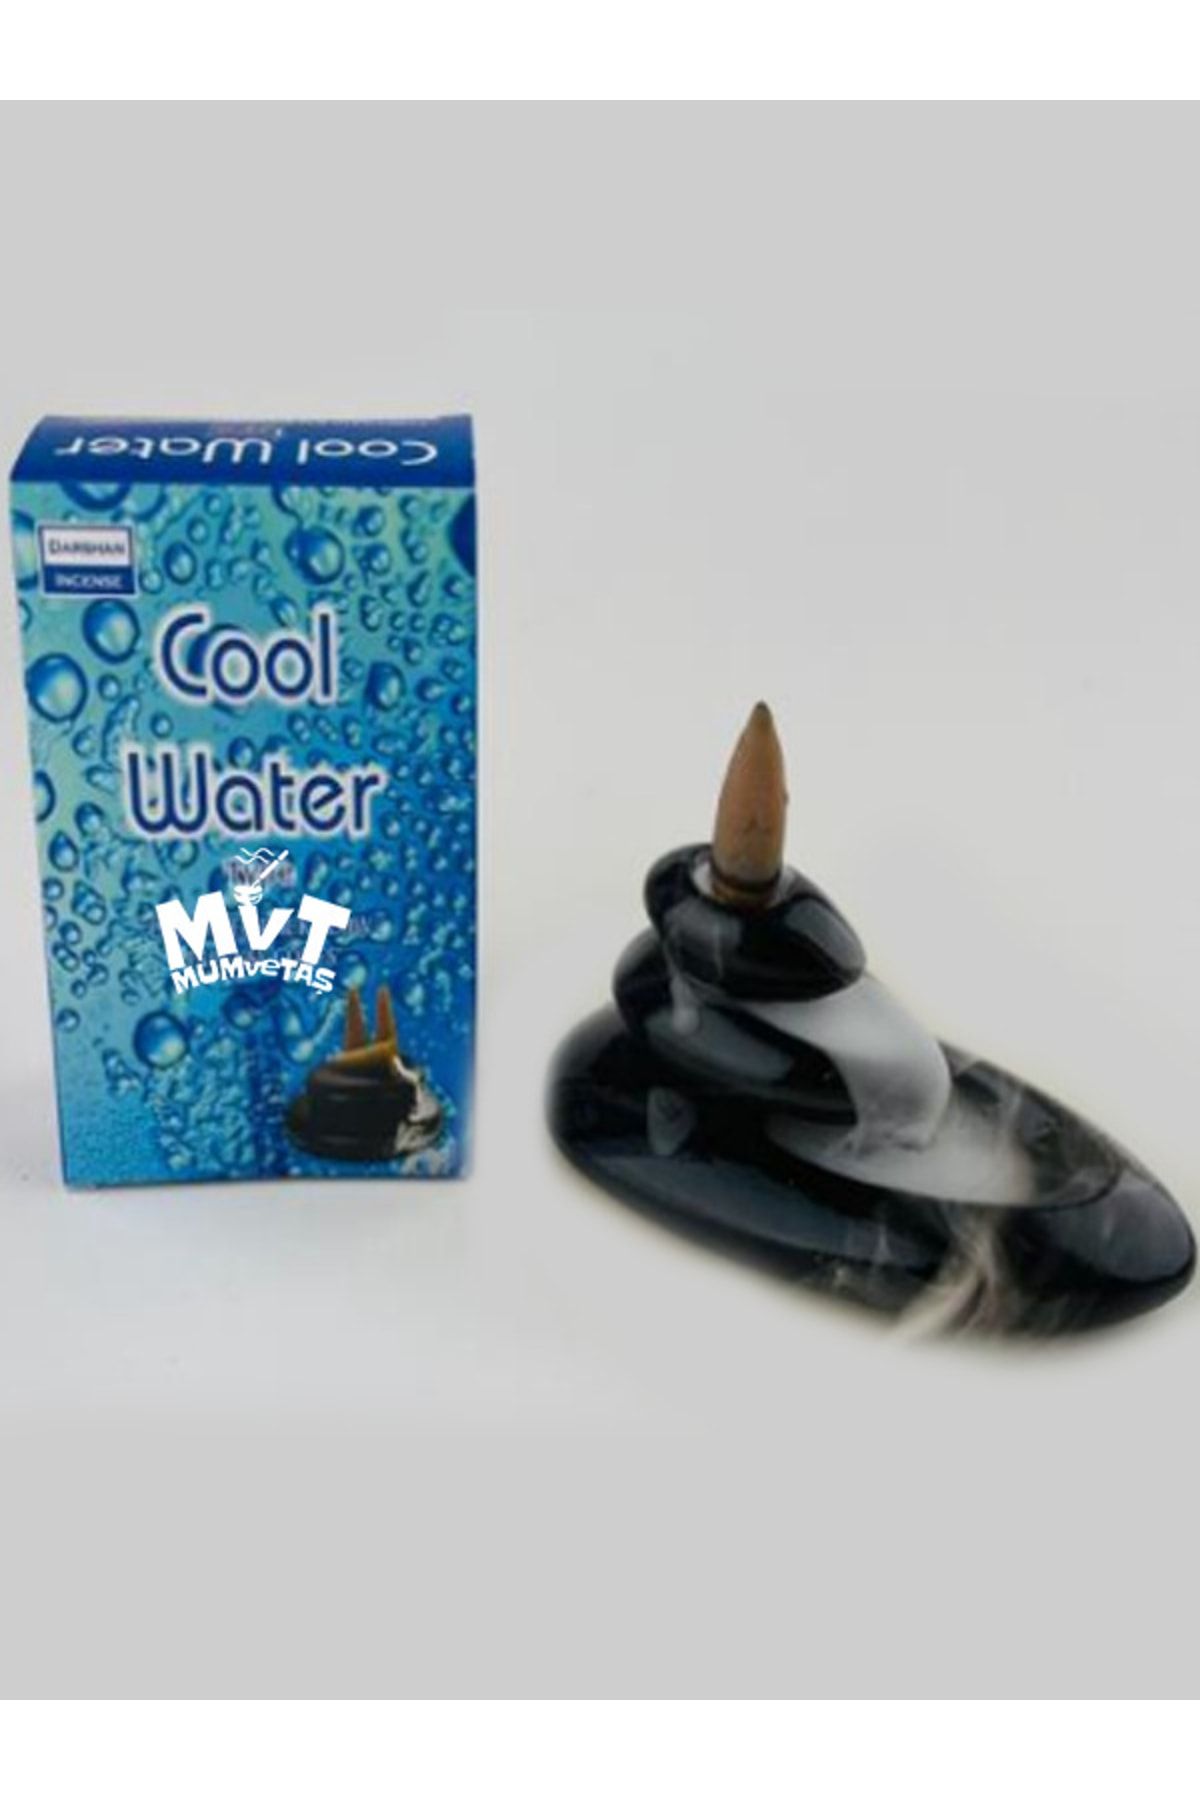 MvT Tasarım Mumvetaş Cool Water Backflow Tütsü (GERİ AKIŞ) 10 Adet Kutulu, Oda Kokusu, Şelale Tütsü